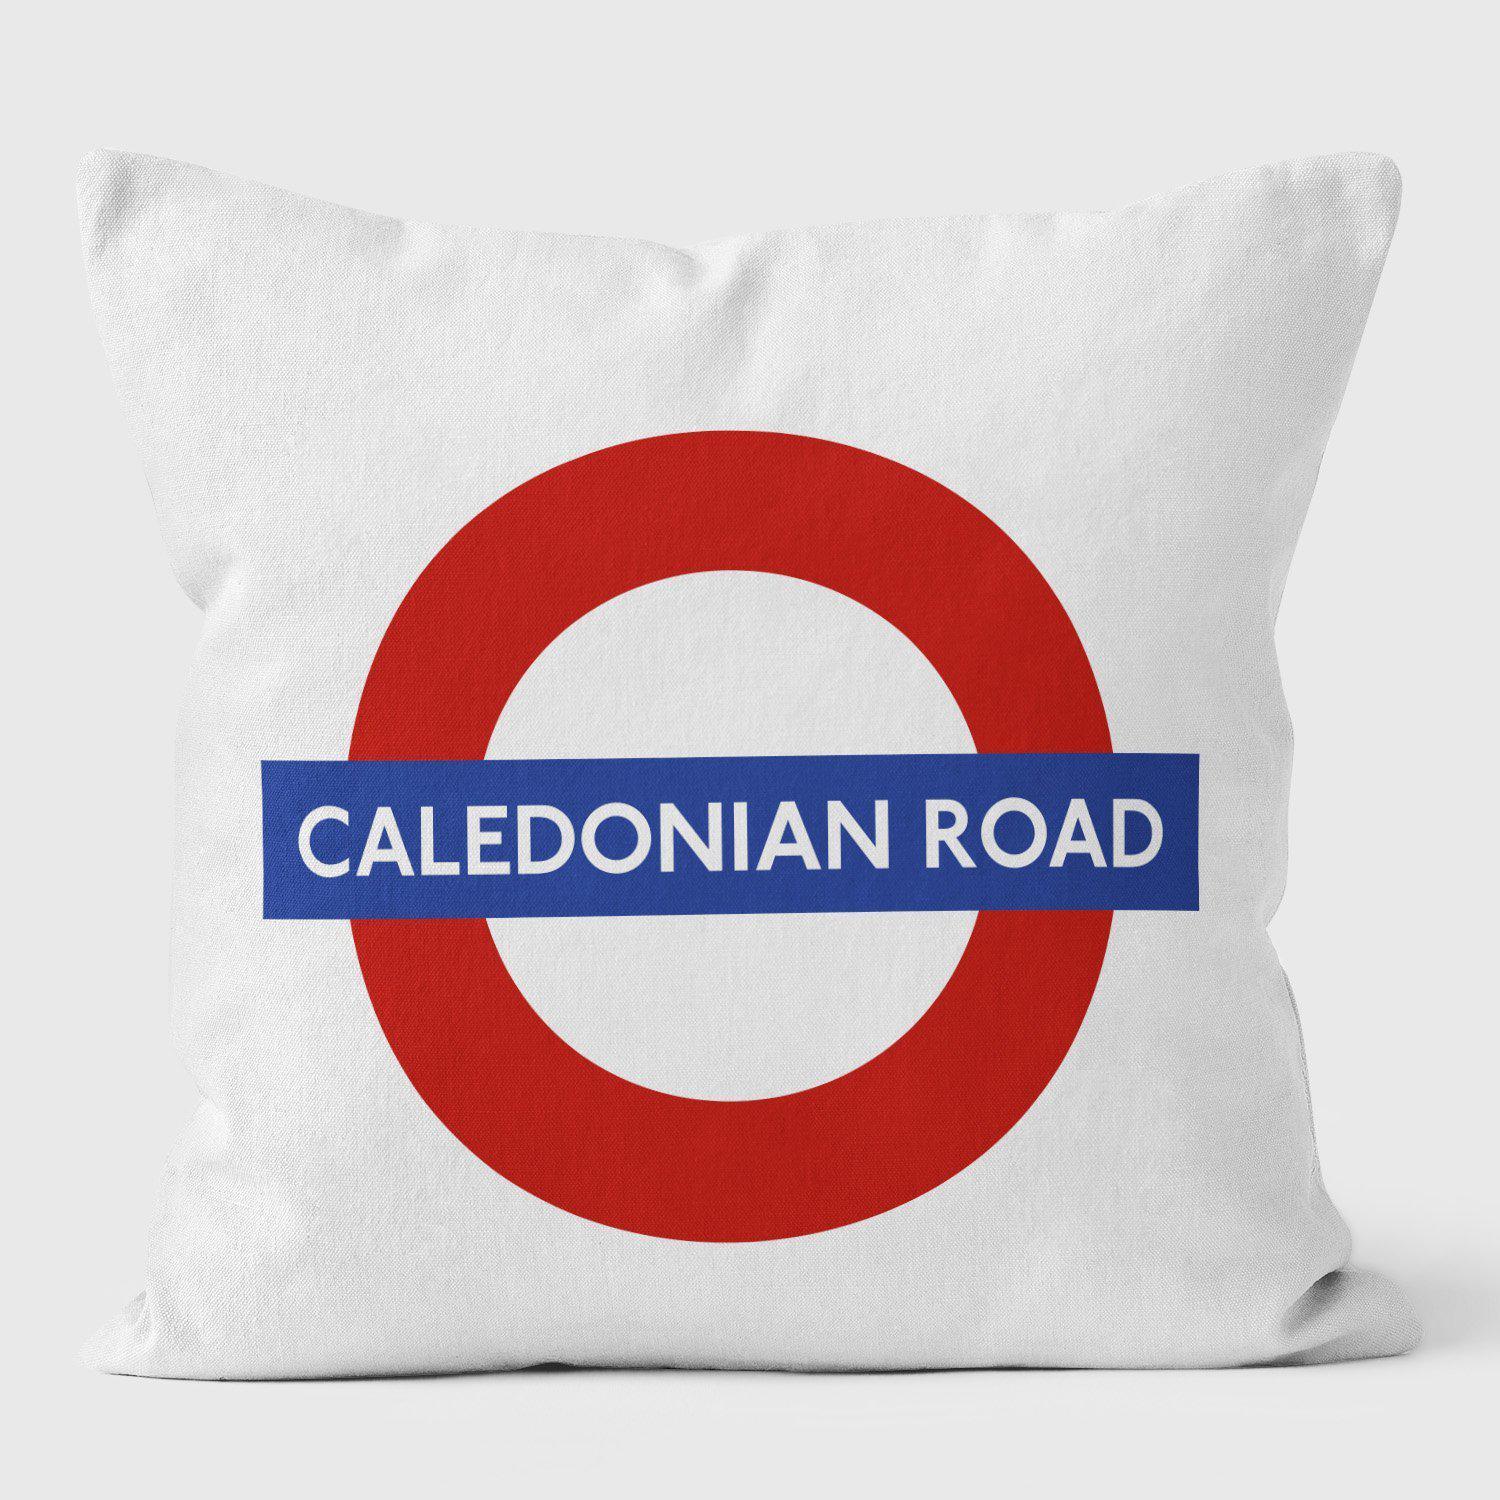 Caledonia Road London Underground Tube Station Roundel Cushion - Handmade Cushions UK - WeLoveCushions